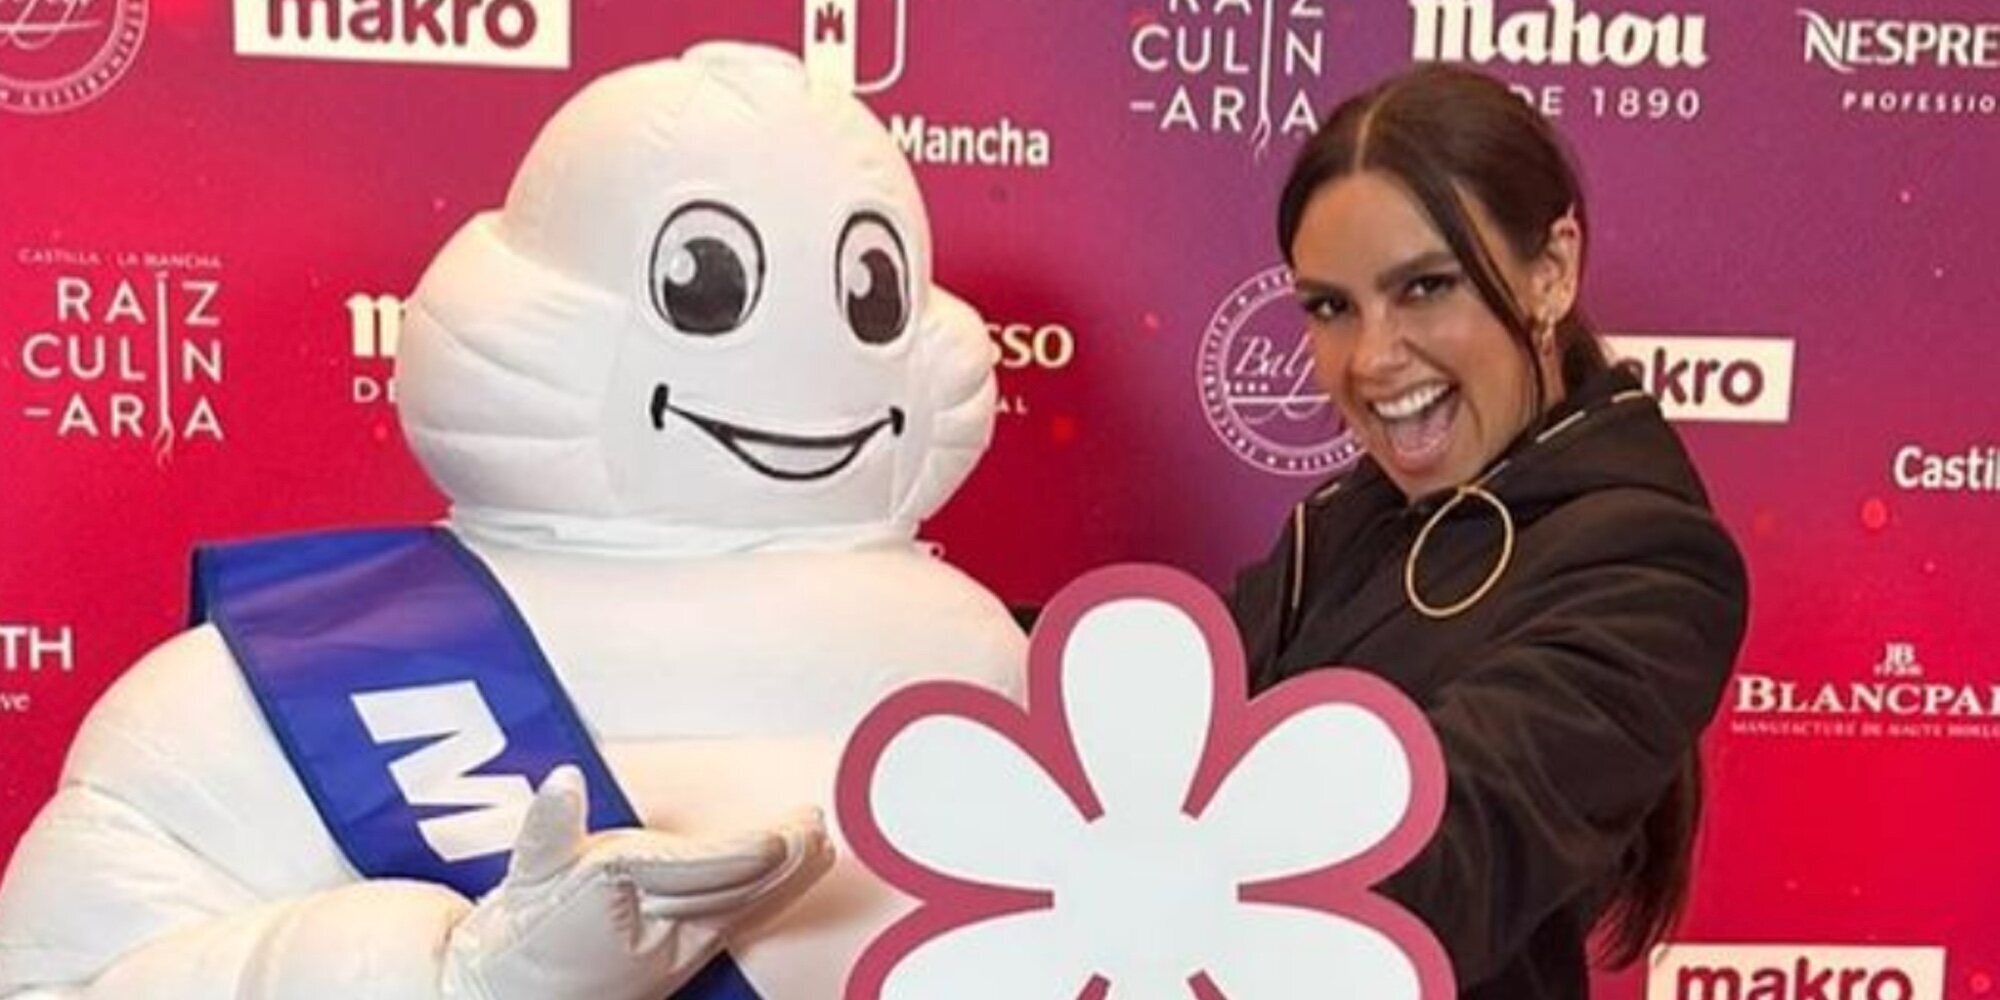 Cristina Pedroche, emocionada tras 'ganar' su primera Estrella Michelín con RavioXO